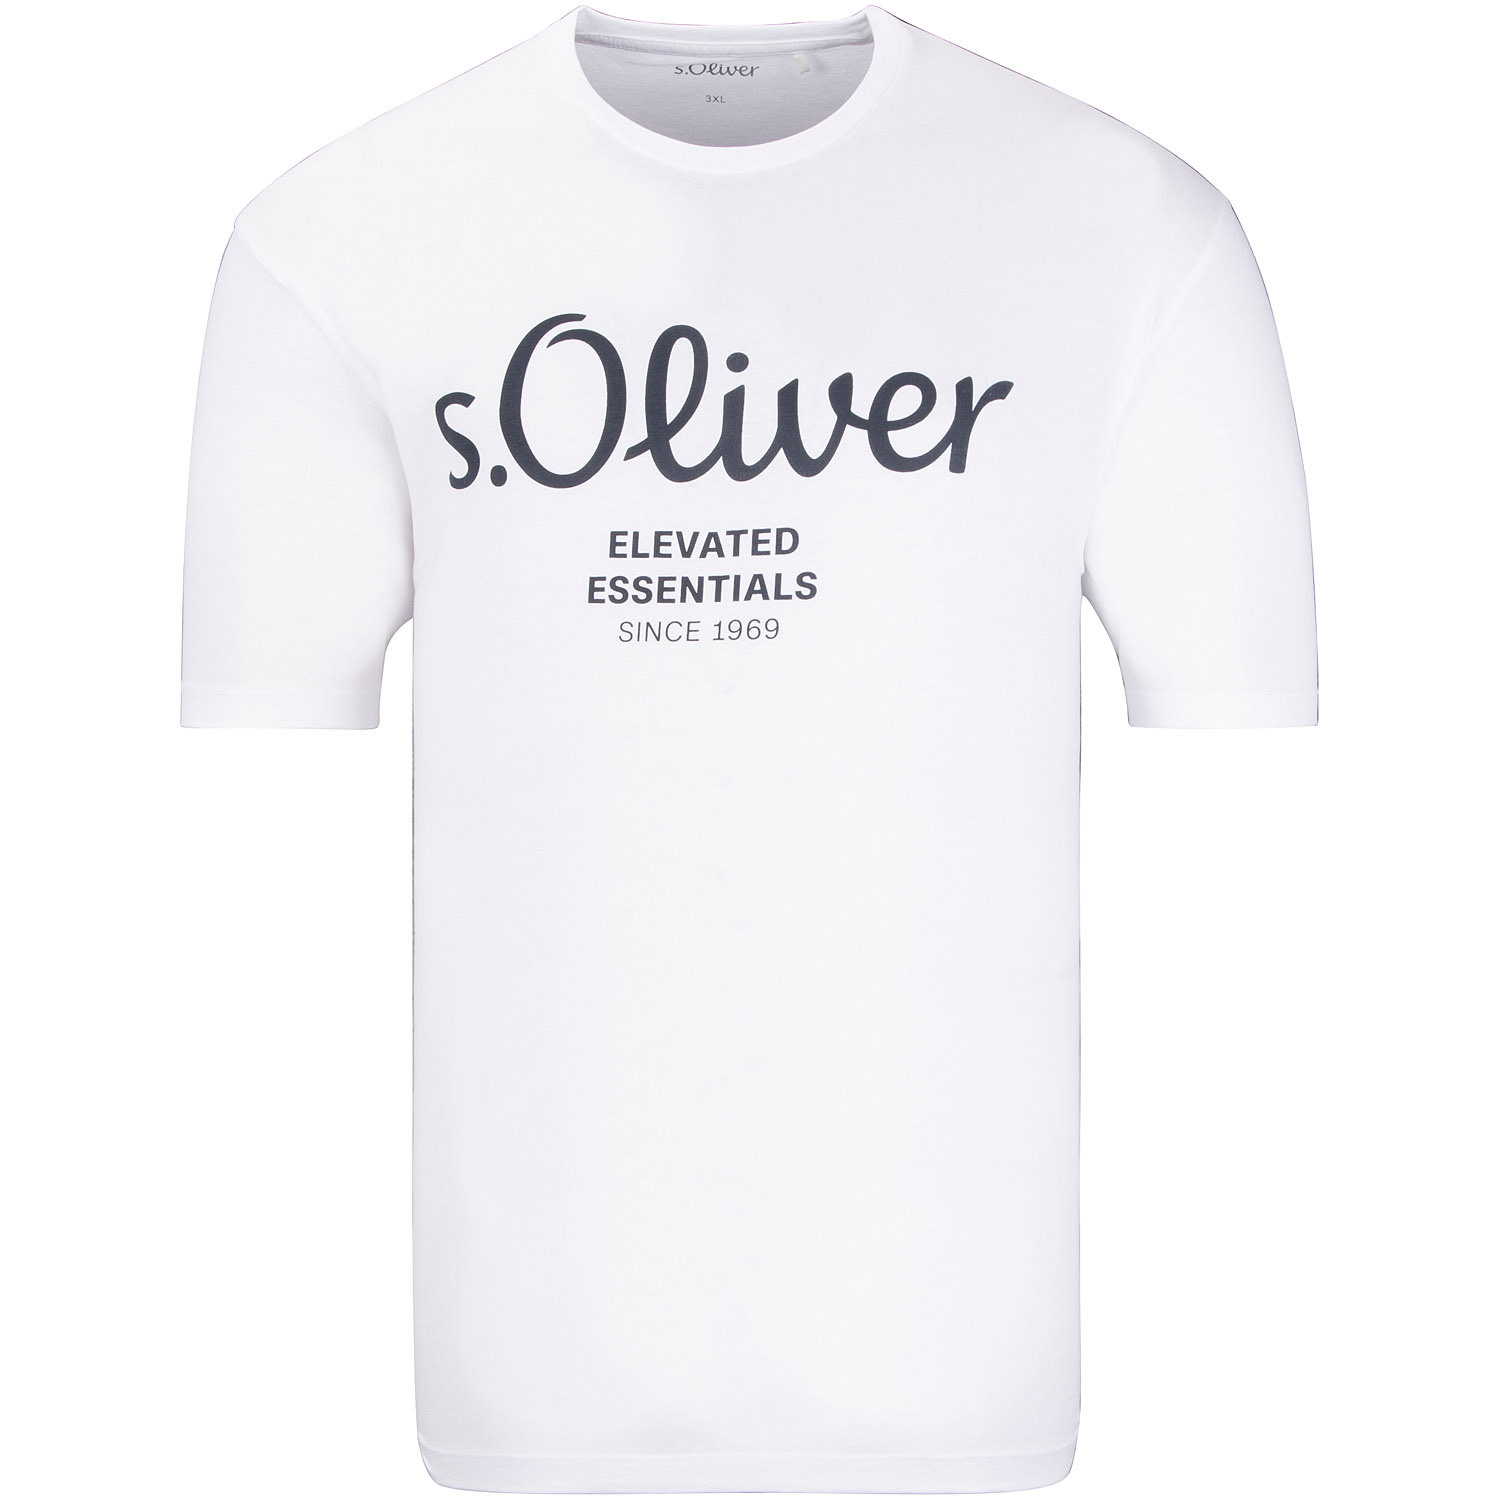 kaufen in weiß S.OLIVER Herrenmode Übergrößen T-Shirt